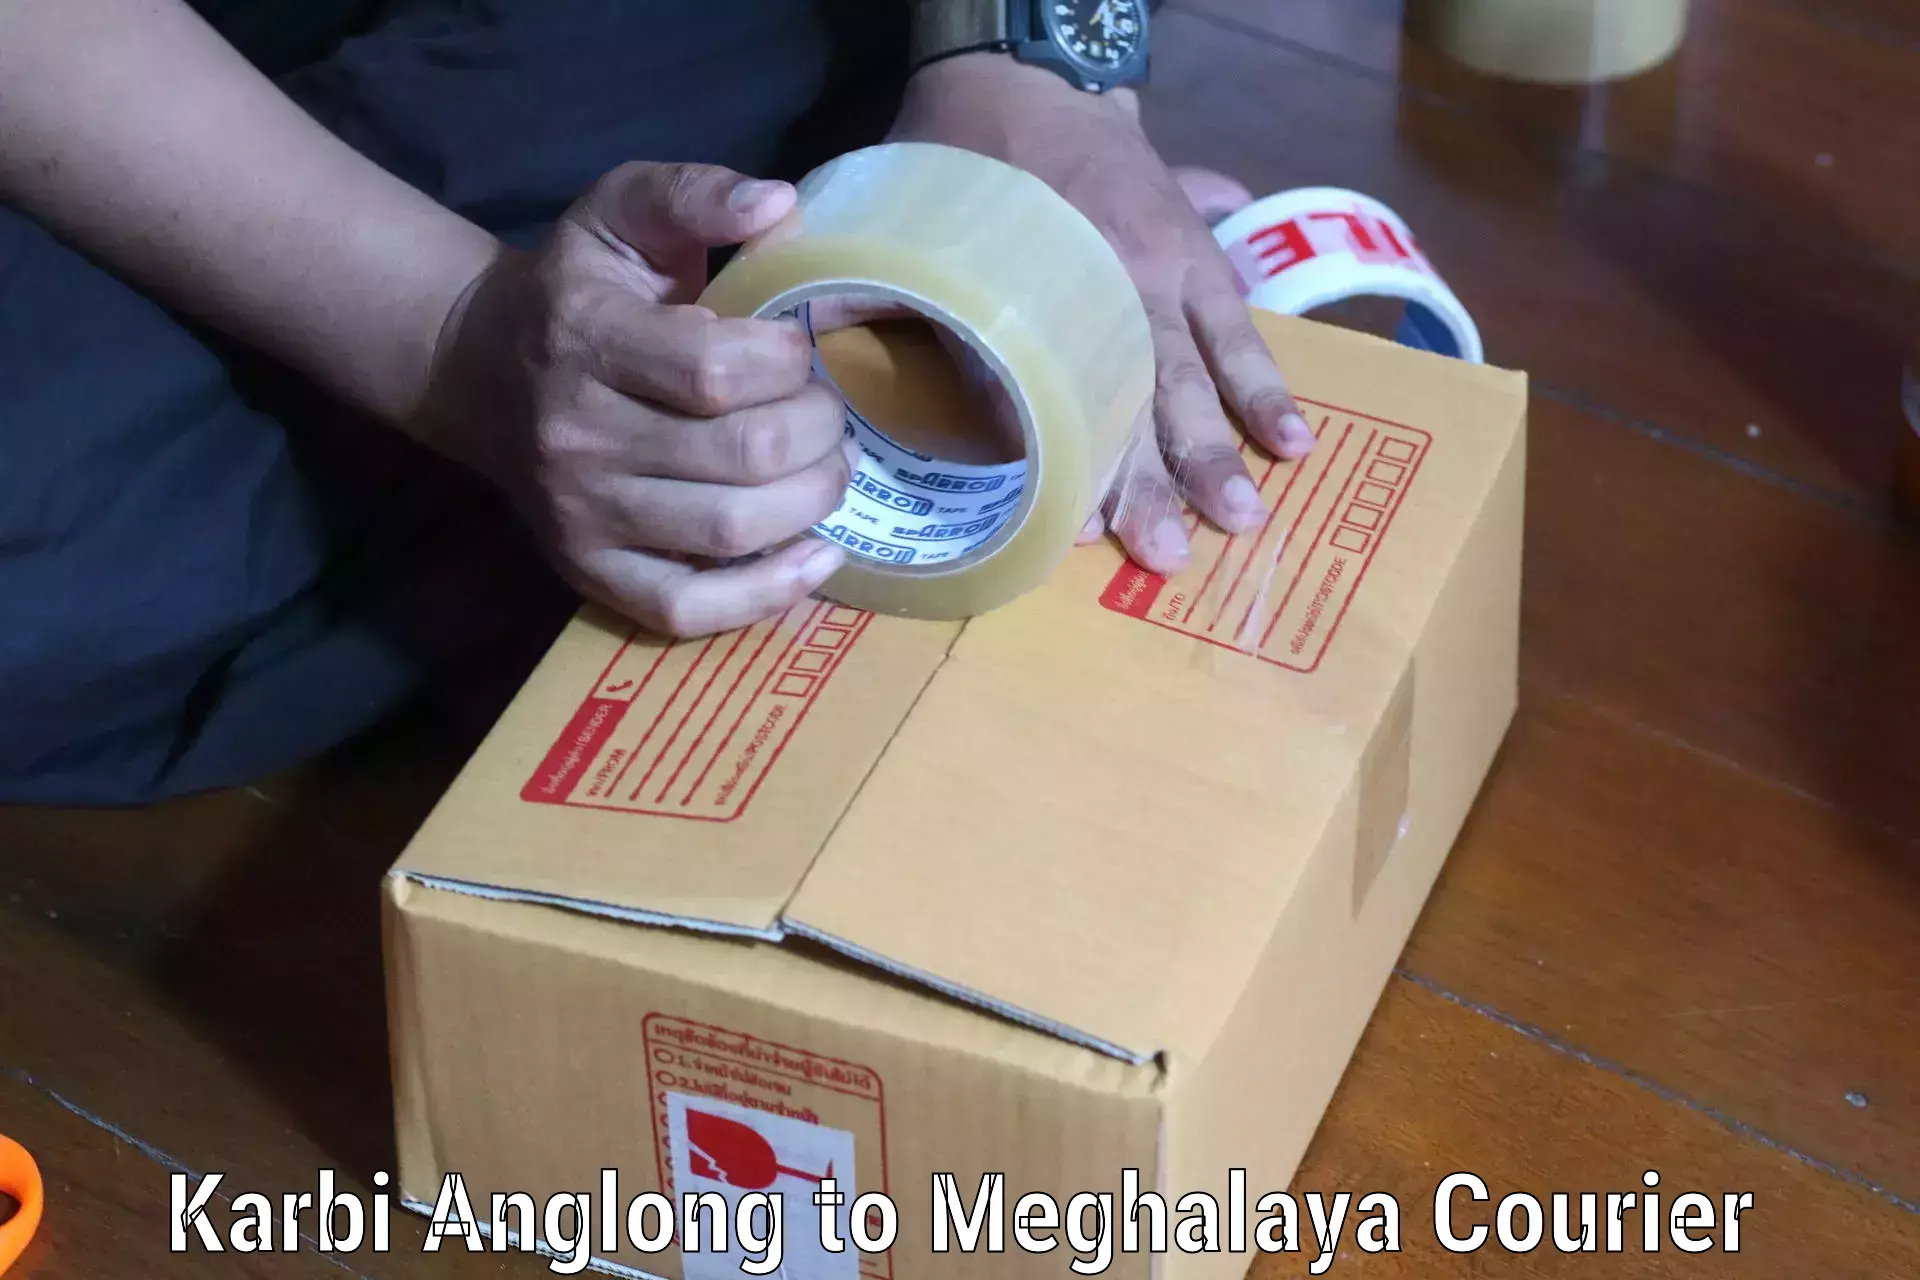 Reliable freight solutions Karbi Anglong to Meghalaya